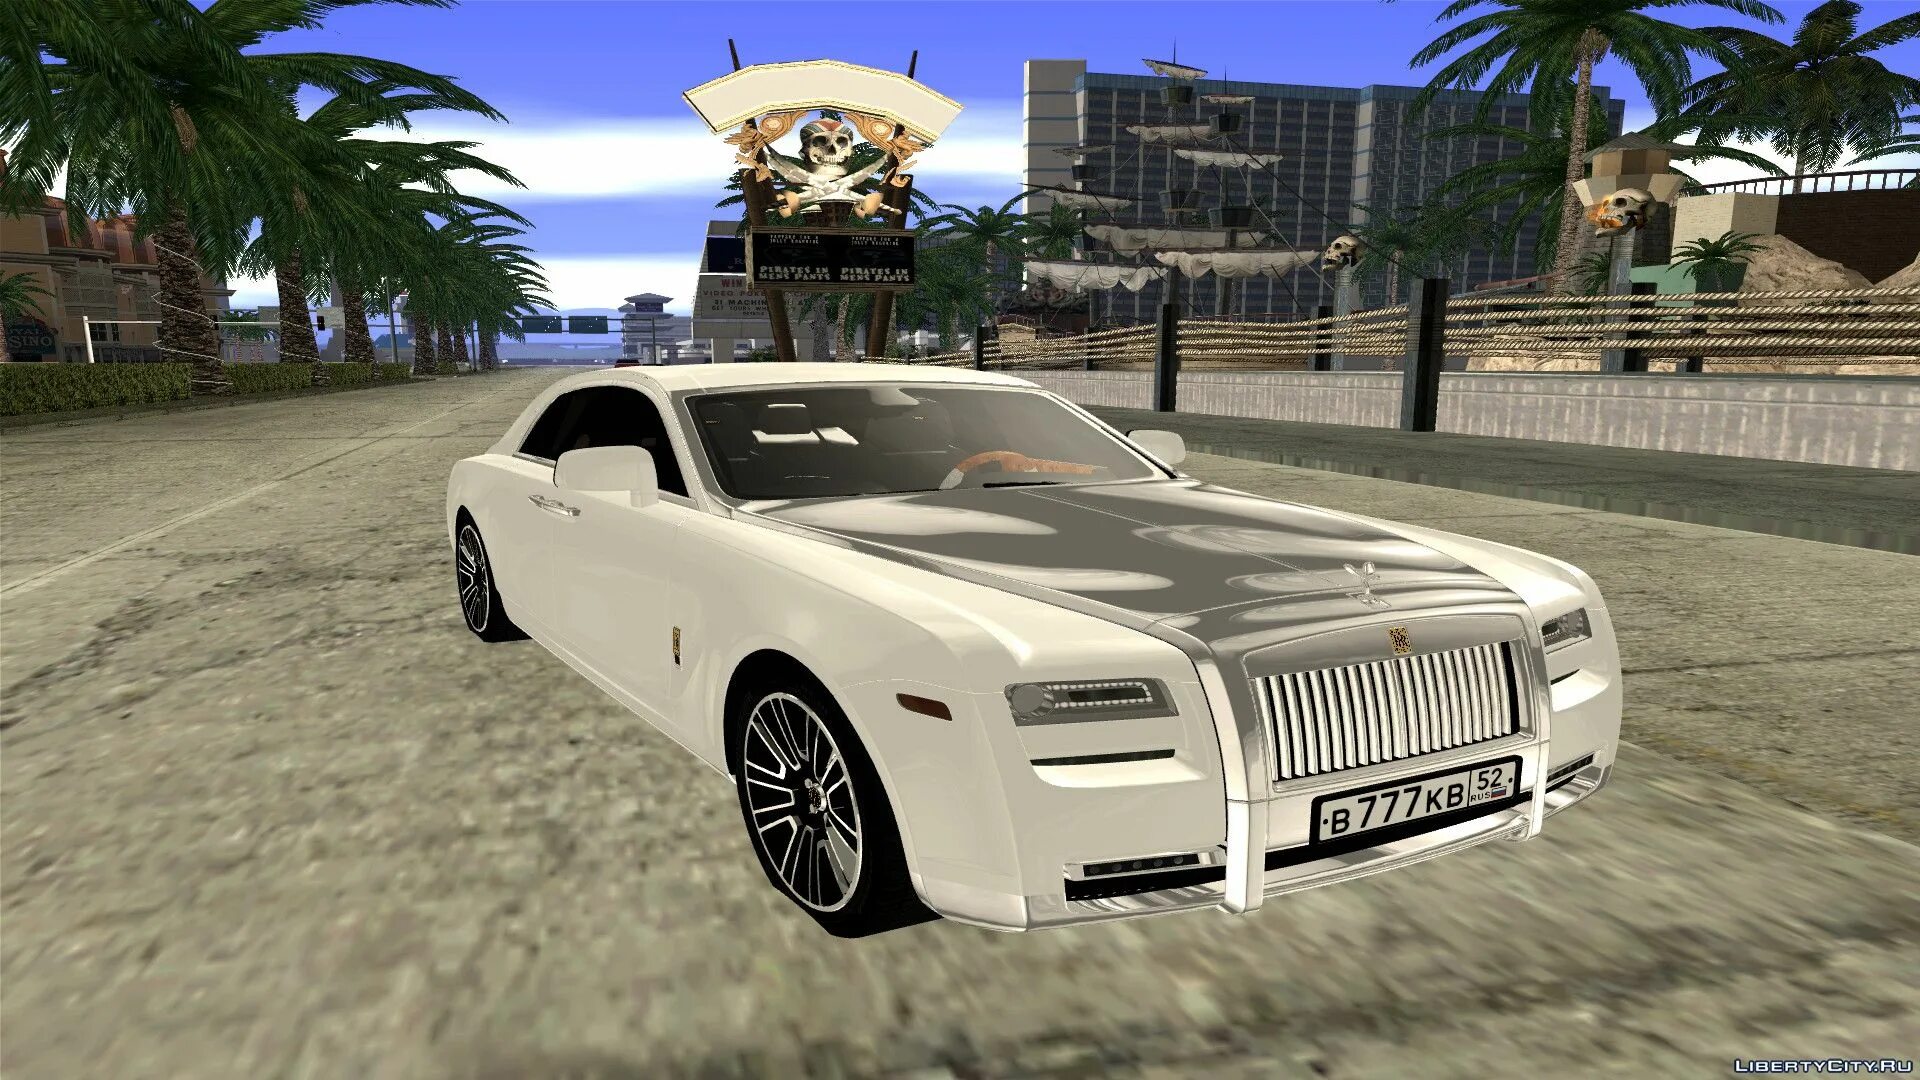 Rolls Royce GTA San Andreas. Файлы для GTA San Andreas: машины,. ГТА Сан машина Rolls Royce. Ашгабат GTA. Мод на большие машины